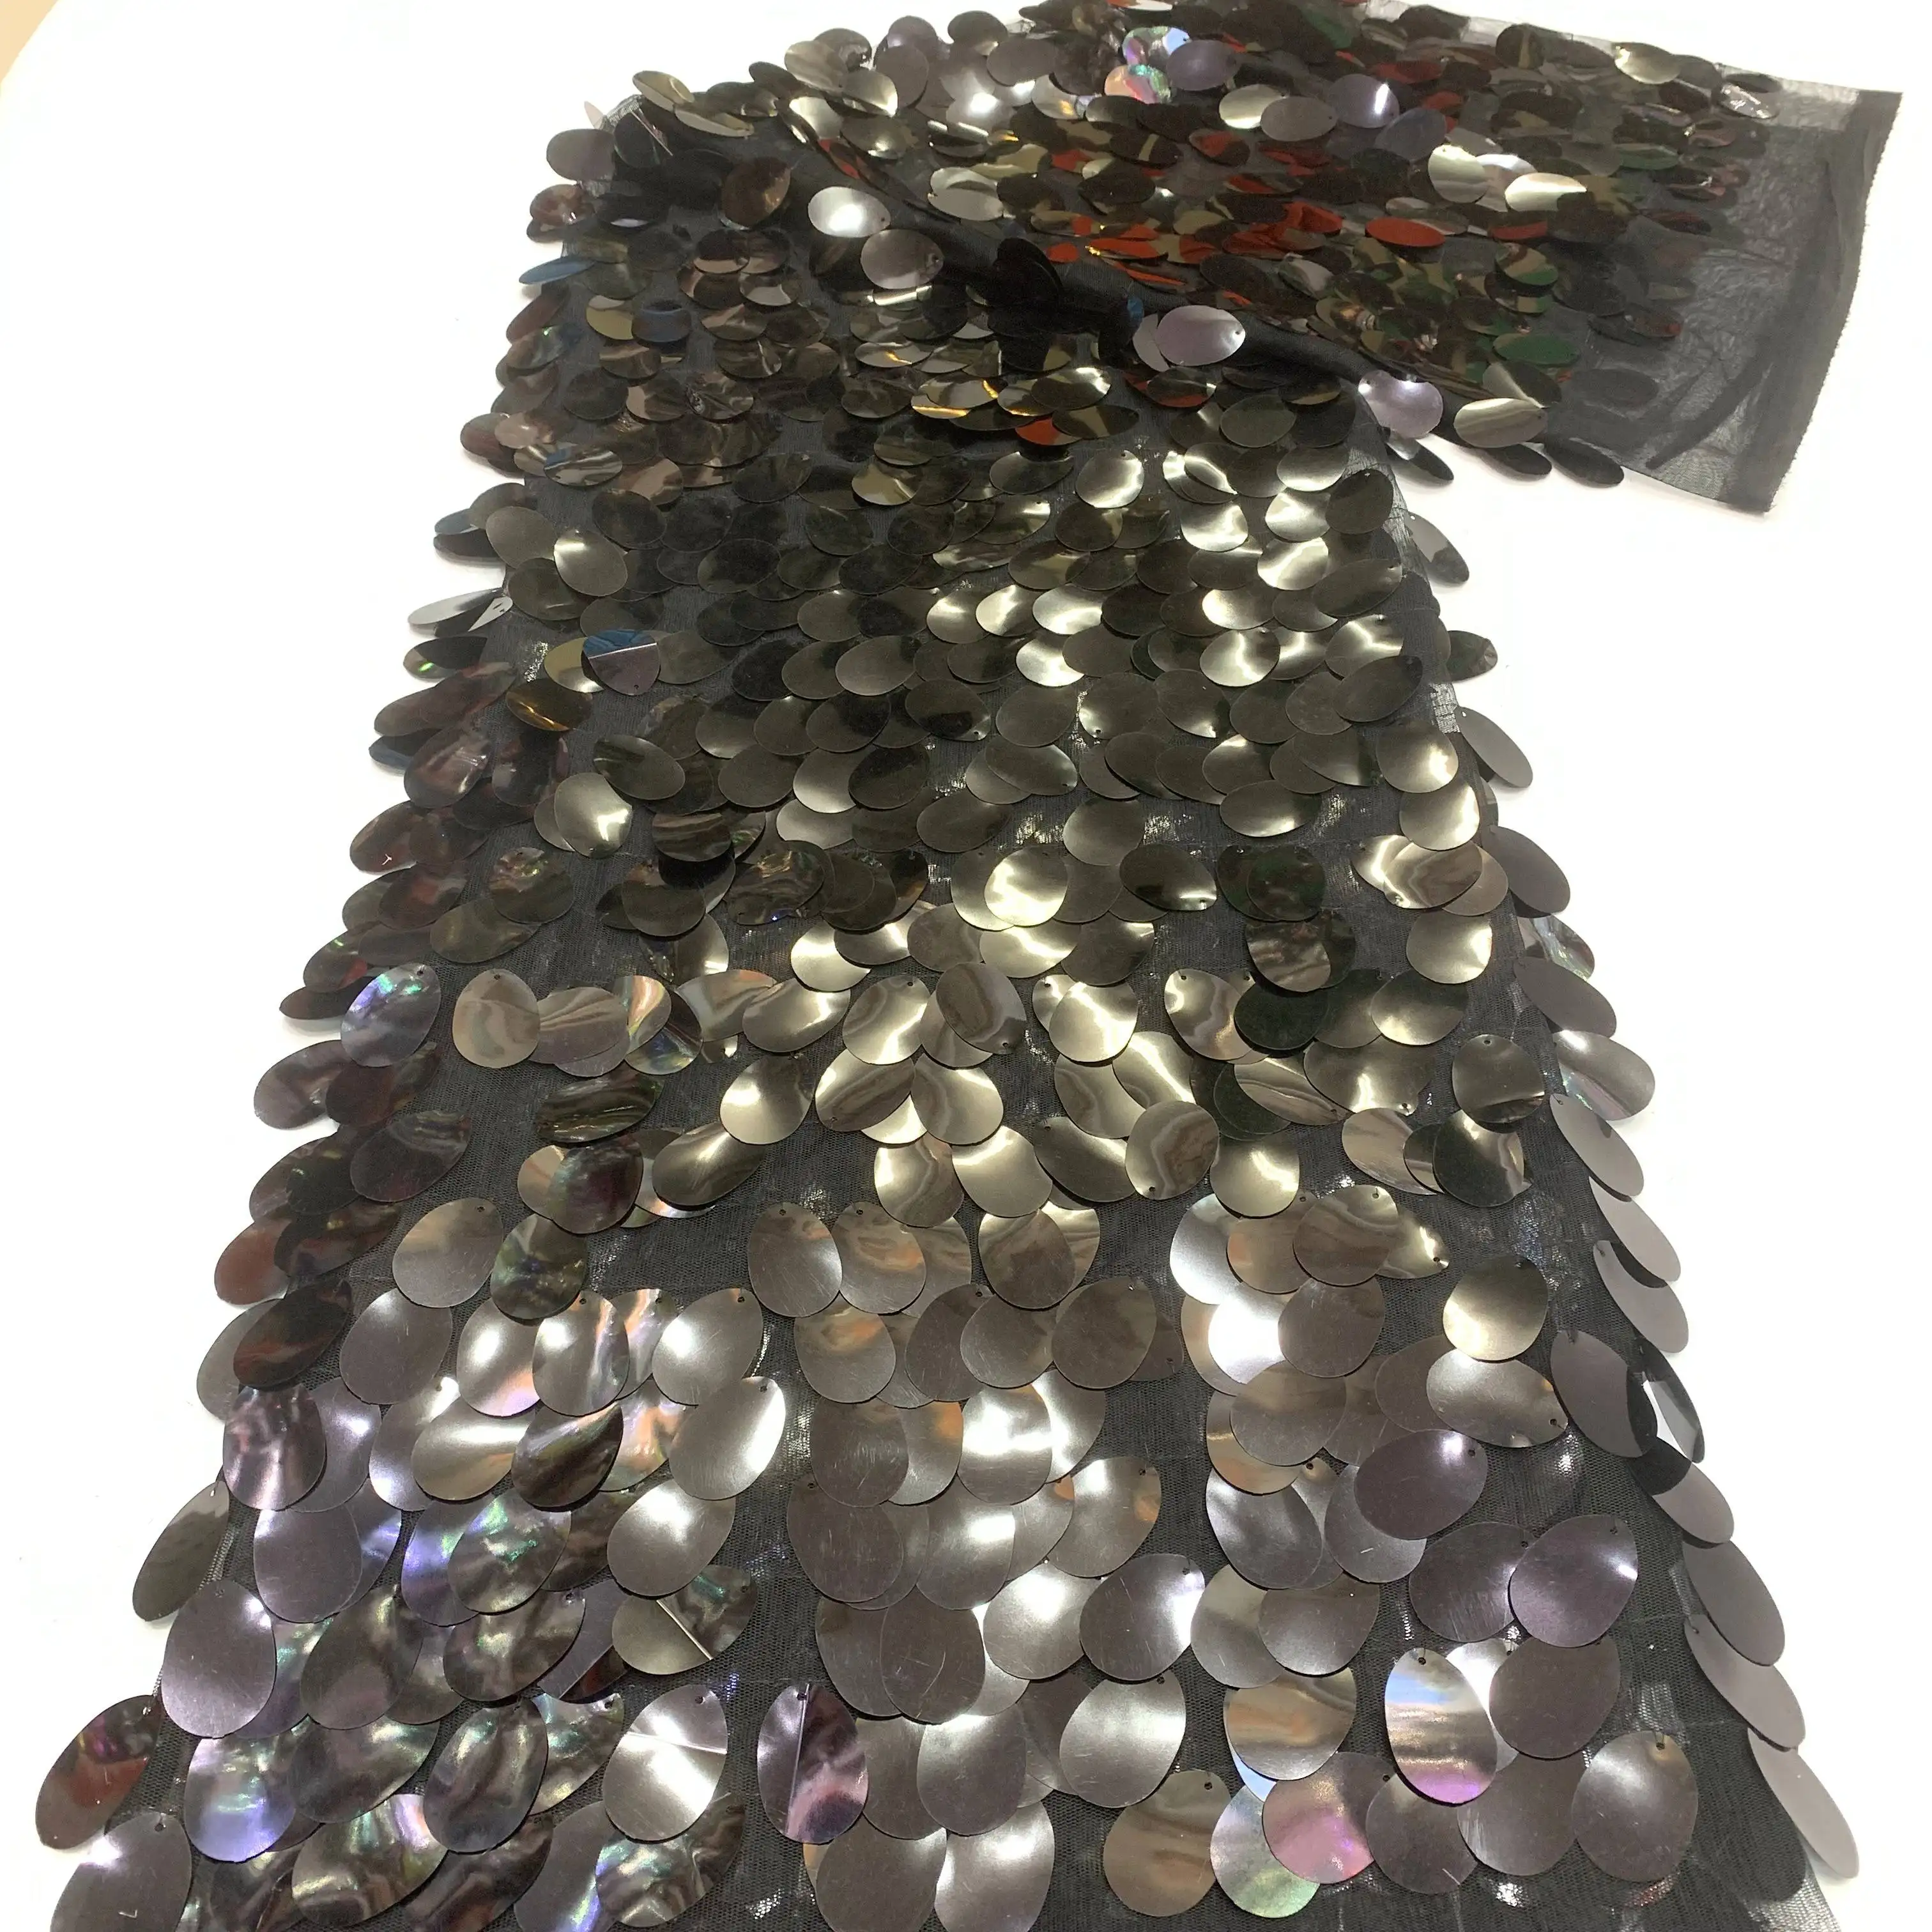 4003 Neues Produkt Europa Mode süße Prinzessin Mesh Kleid Material Französisch Spitze Stoff mit großen Pailletten